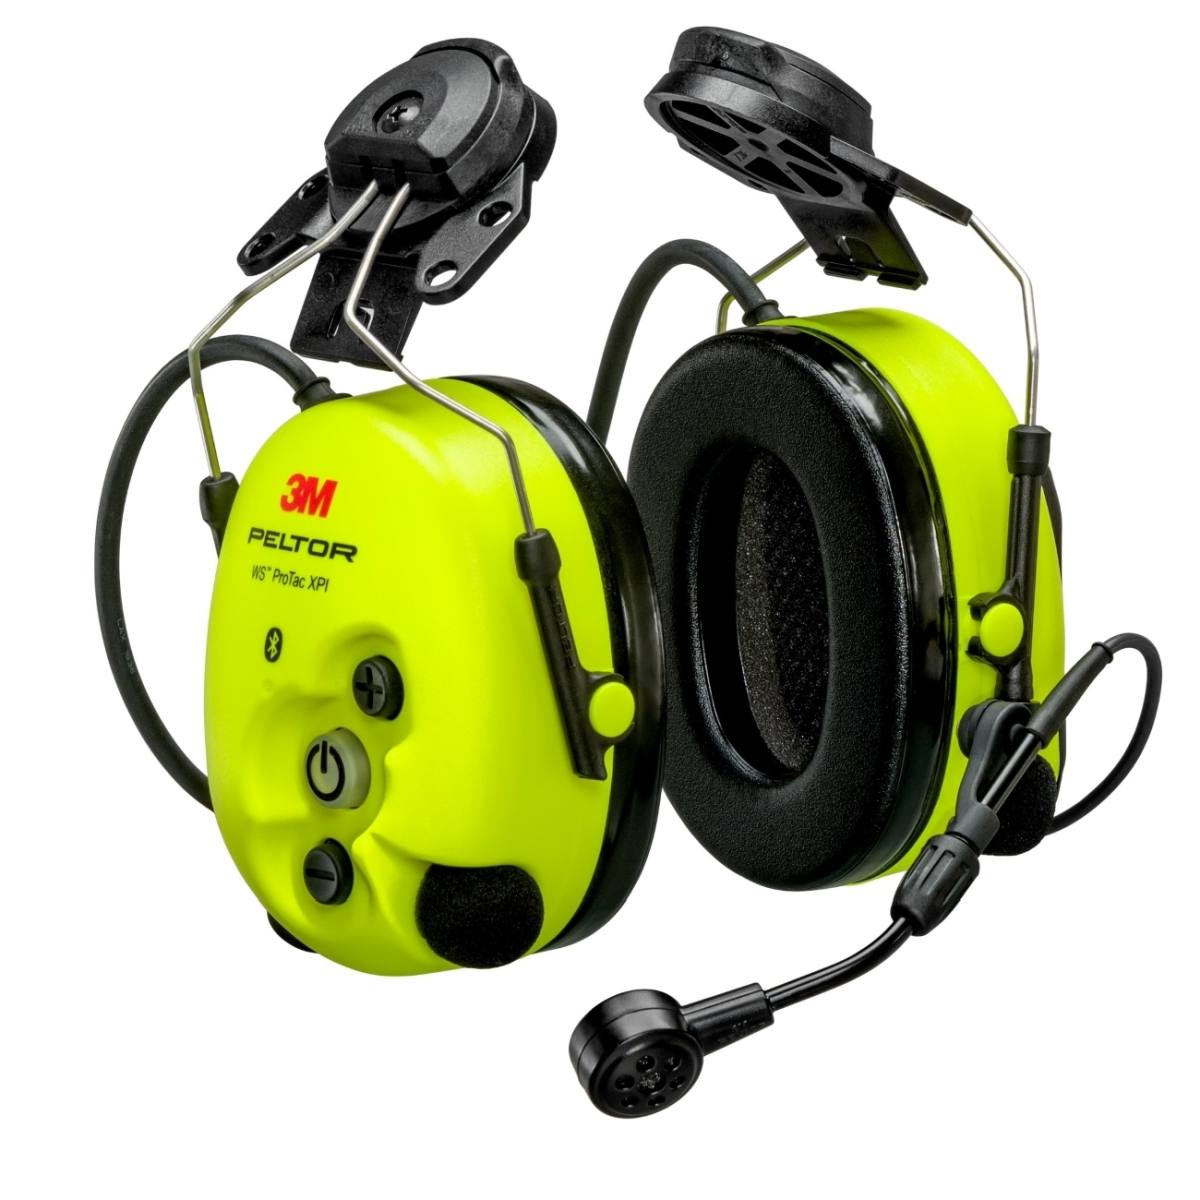 3M PELTOR WS ProTac XPI auricular de protección auditiva FLX2, fijación al casco, Bluetooth, amarillo, MT15H7P3EWS6-111